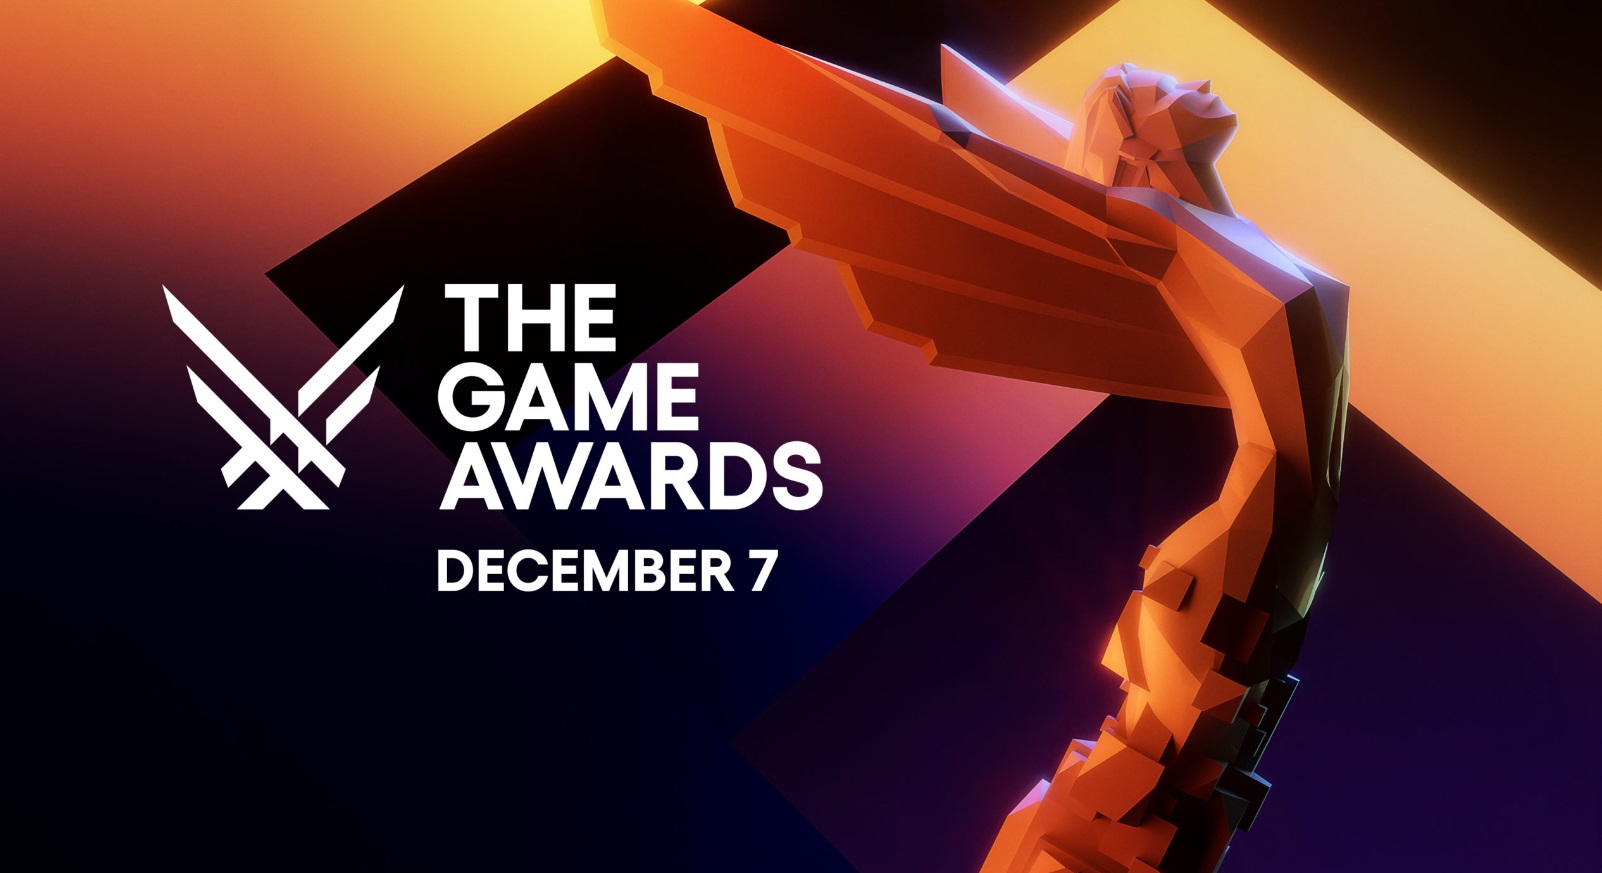 La voz de Kratos dio el discurso más largo en la historia de The Game  Awards